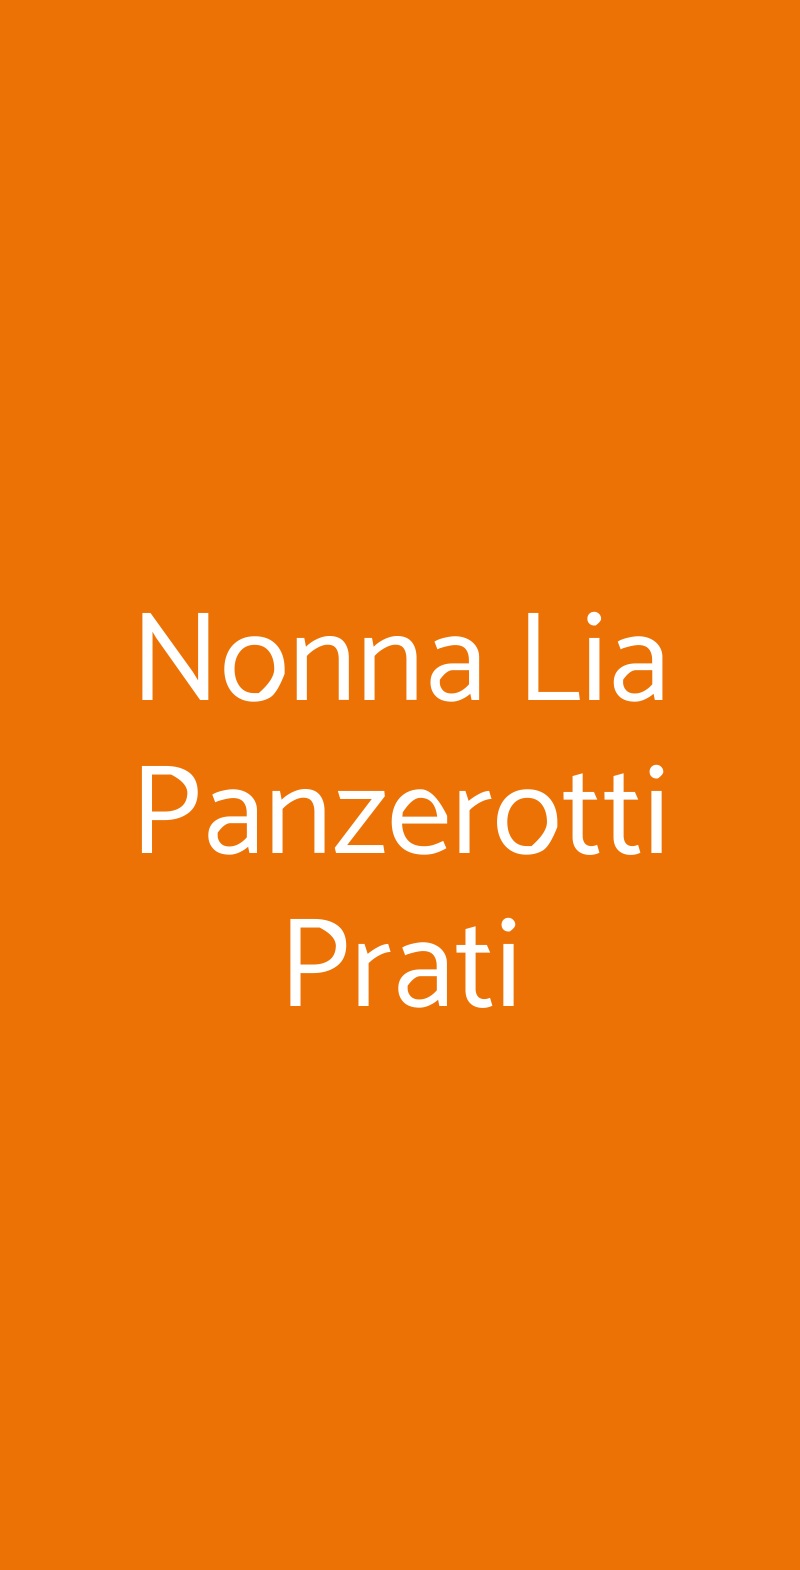 Nonna Lia Panzerotti Prati Roma menù 1 pagina